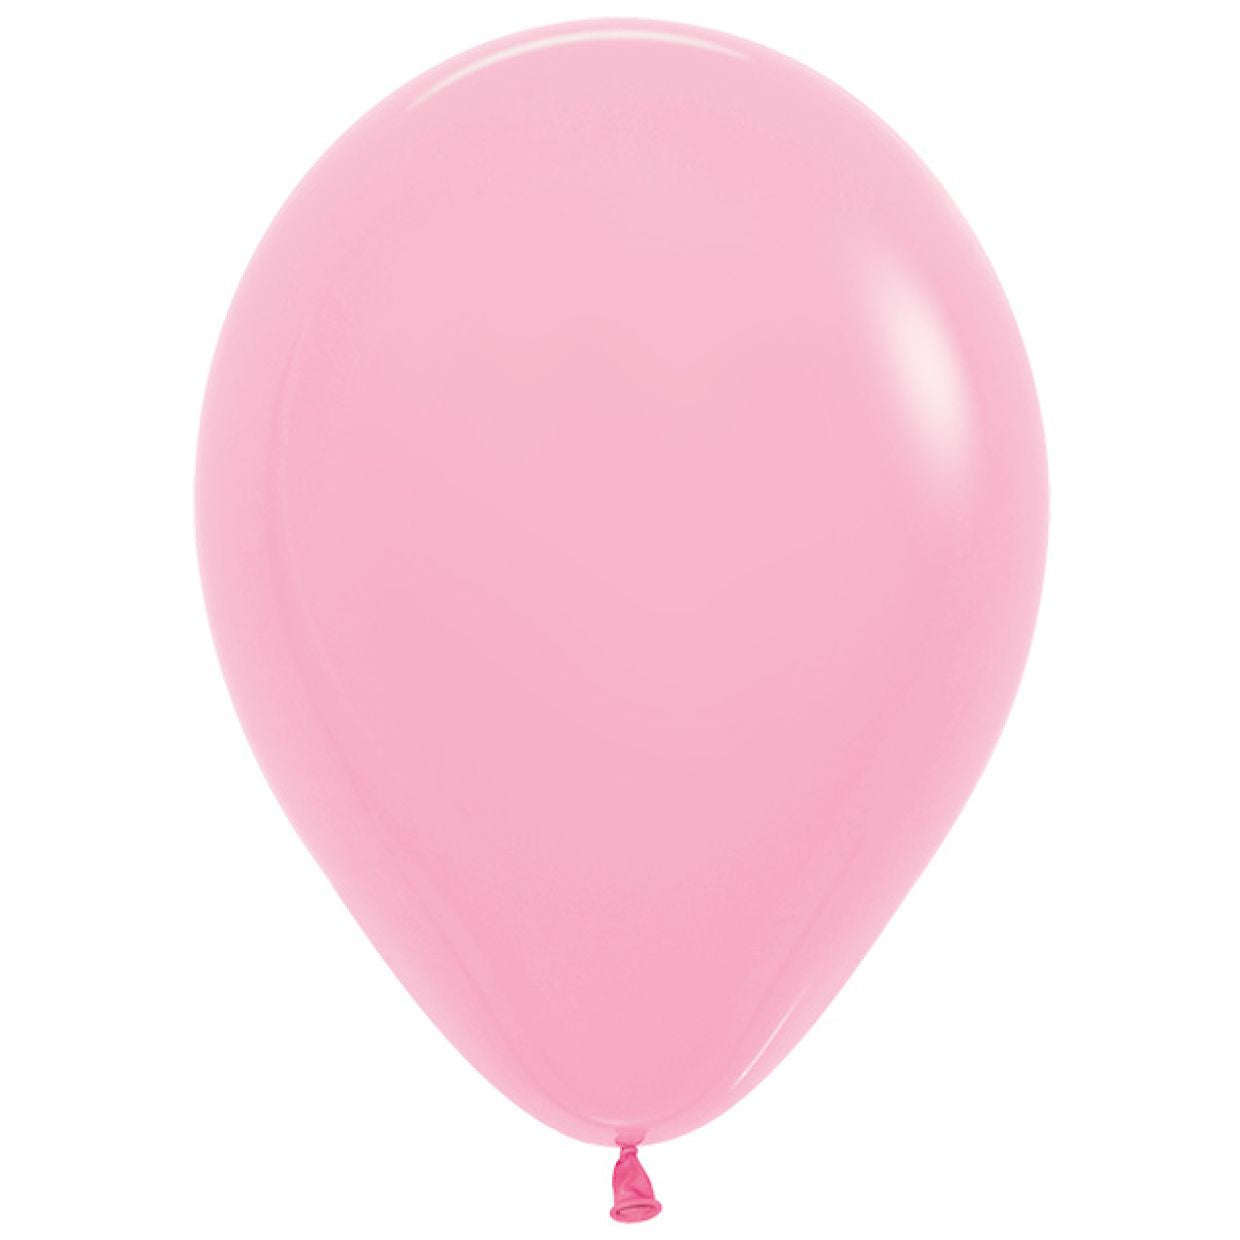 30cm Standard Light Pink Balloon